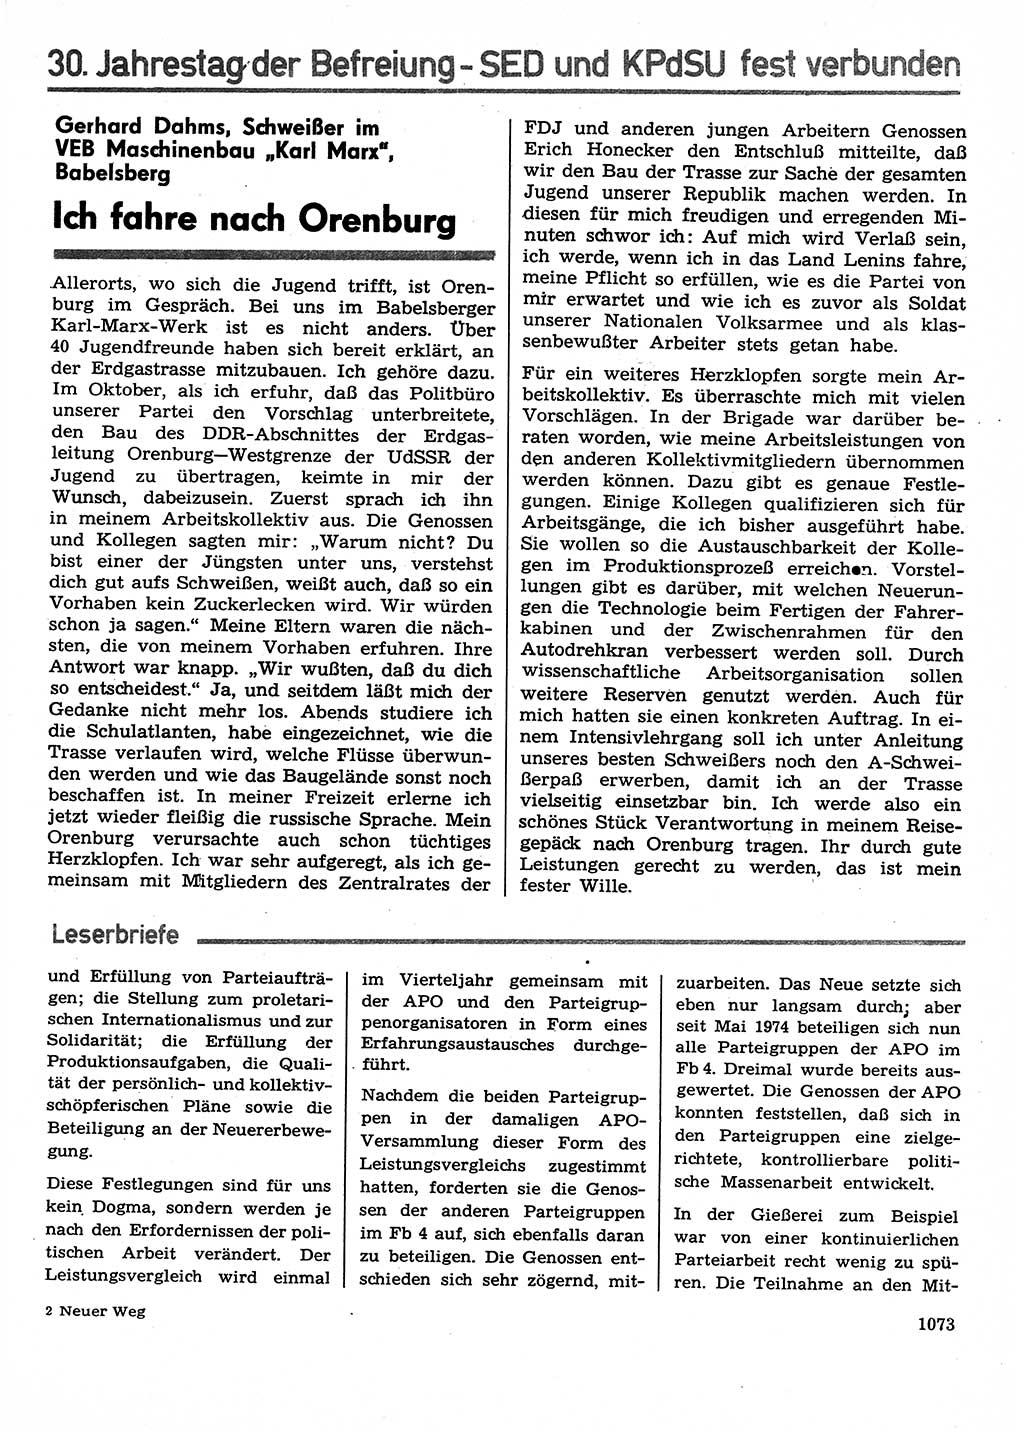 Neuer Weg (NW), Organ des Zentralkomitees (ZK) der SED (Sozialistische Einheitspartei Deutschlands) für Fragen des Parteilebens, 29. Jahrgang [Deutsche Demokratische Republik (DDR)] 1974, Seite 1073 (NW ZK SED DDR 1974, S. 1073)